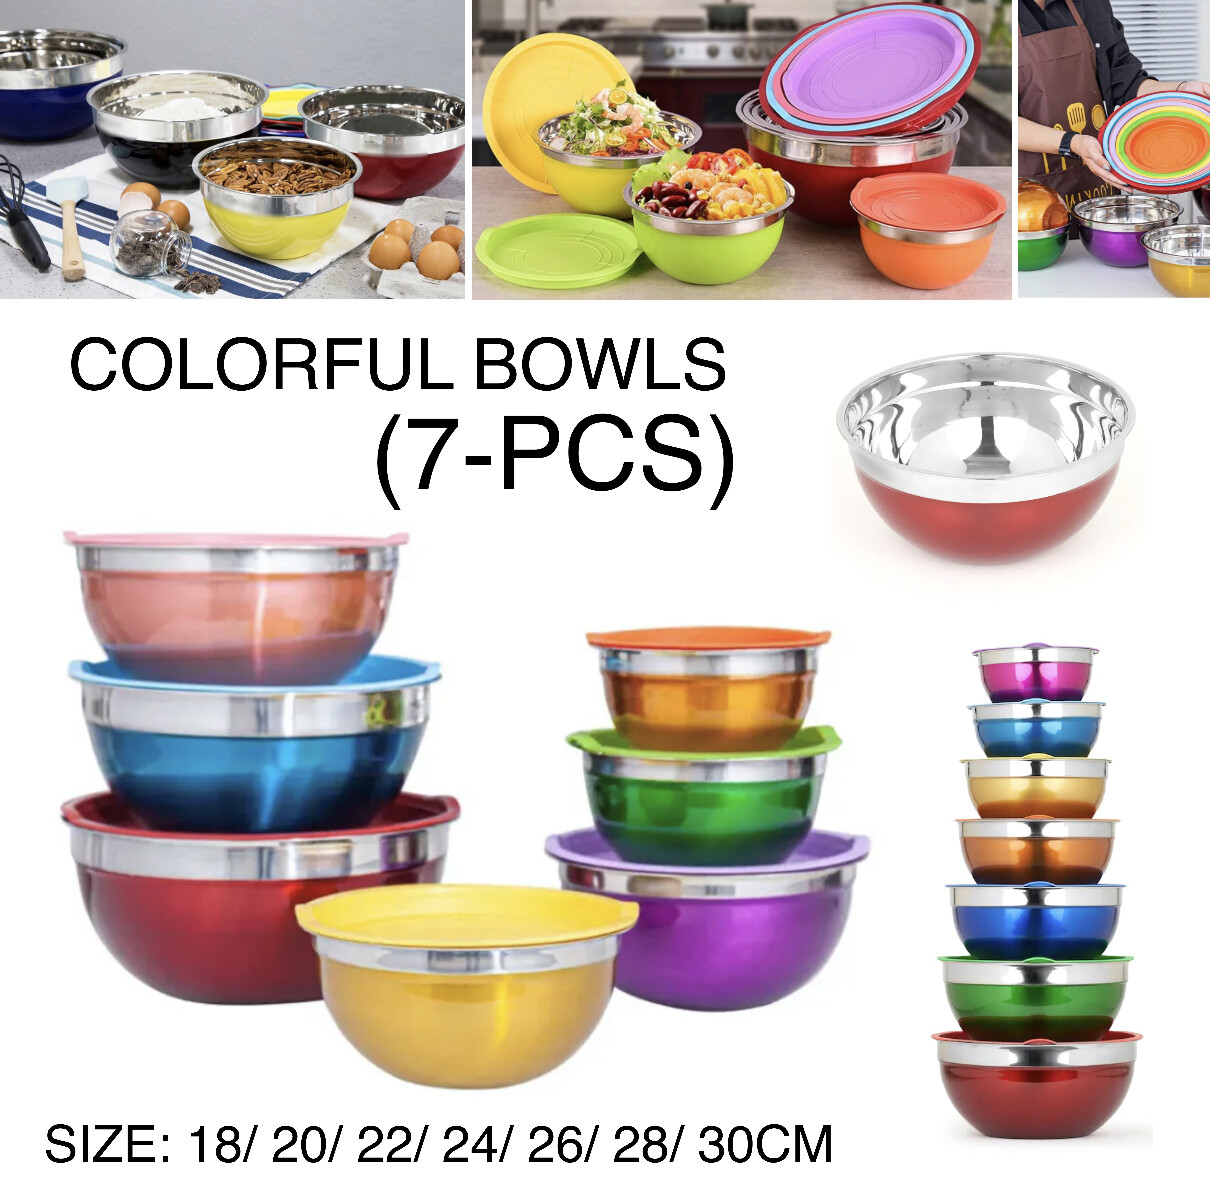 7-Pcs Colorful Bowls